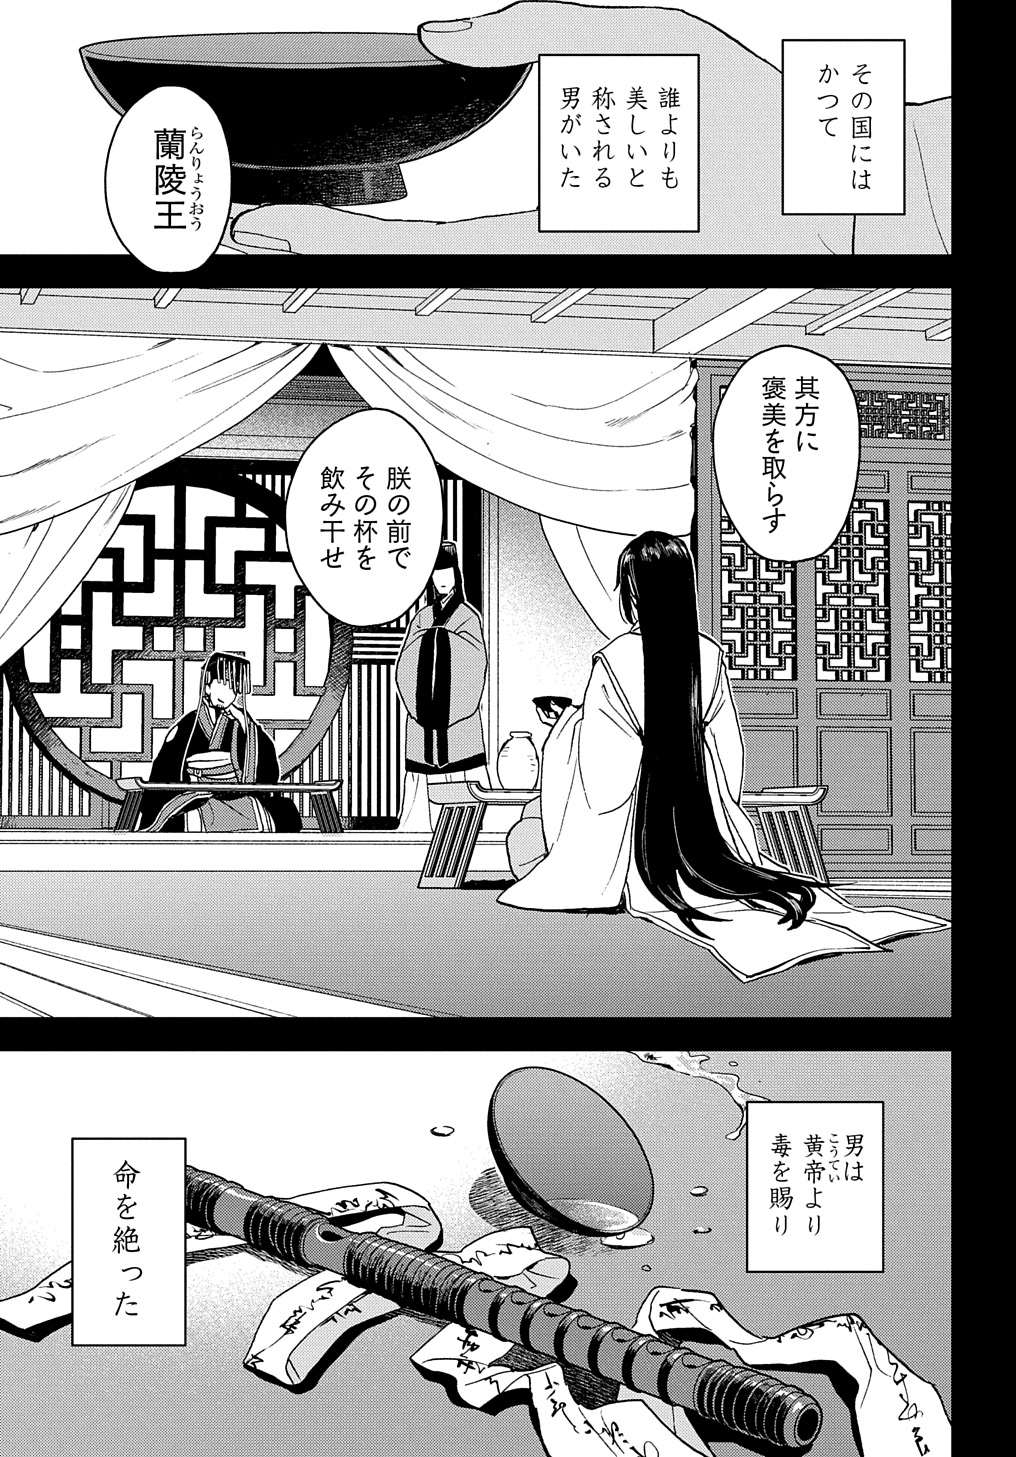 Misasagi no Ou - Chapter 1 - Page 1